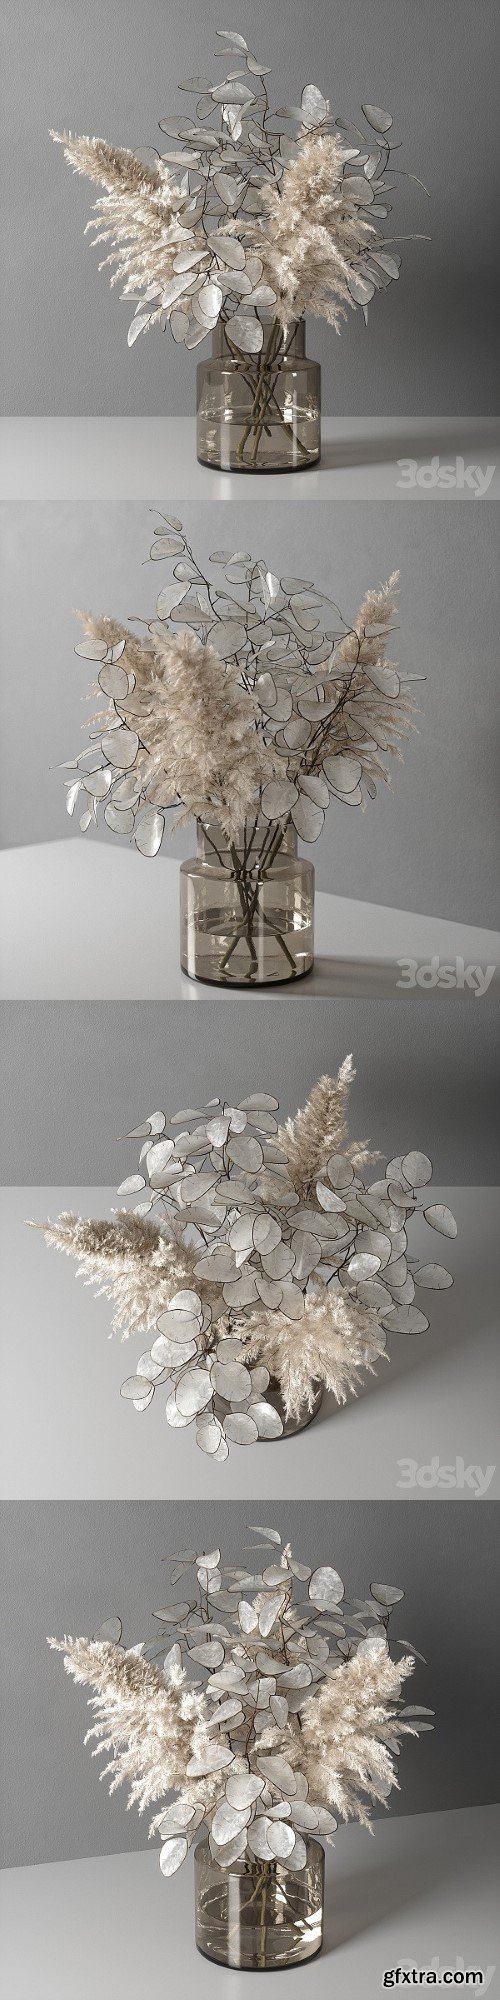 Decorative Vase 08